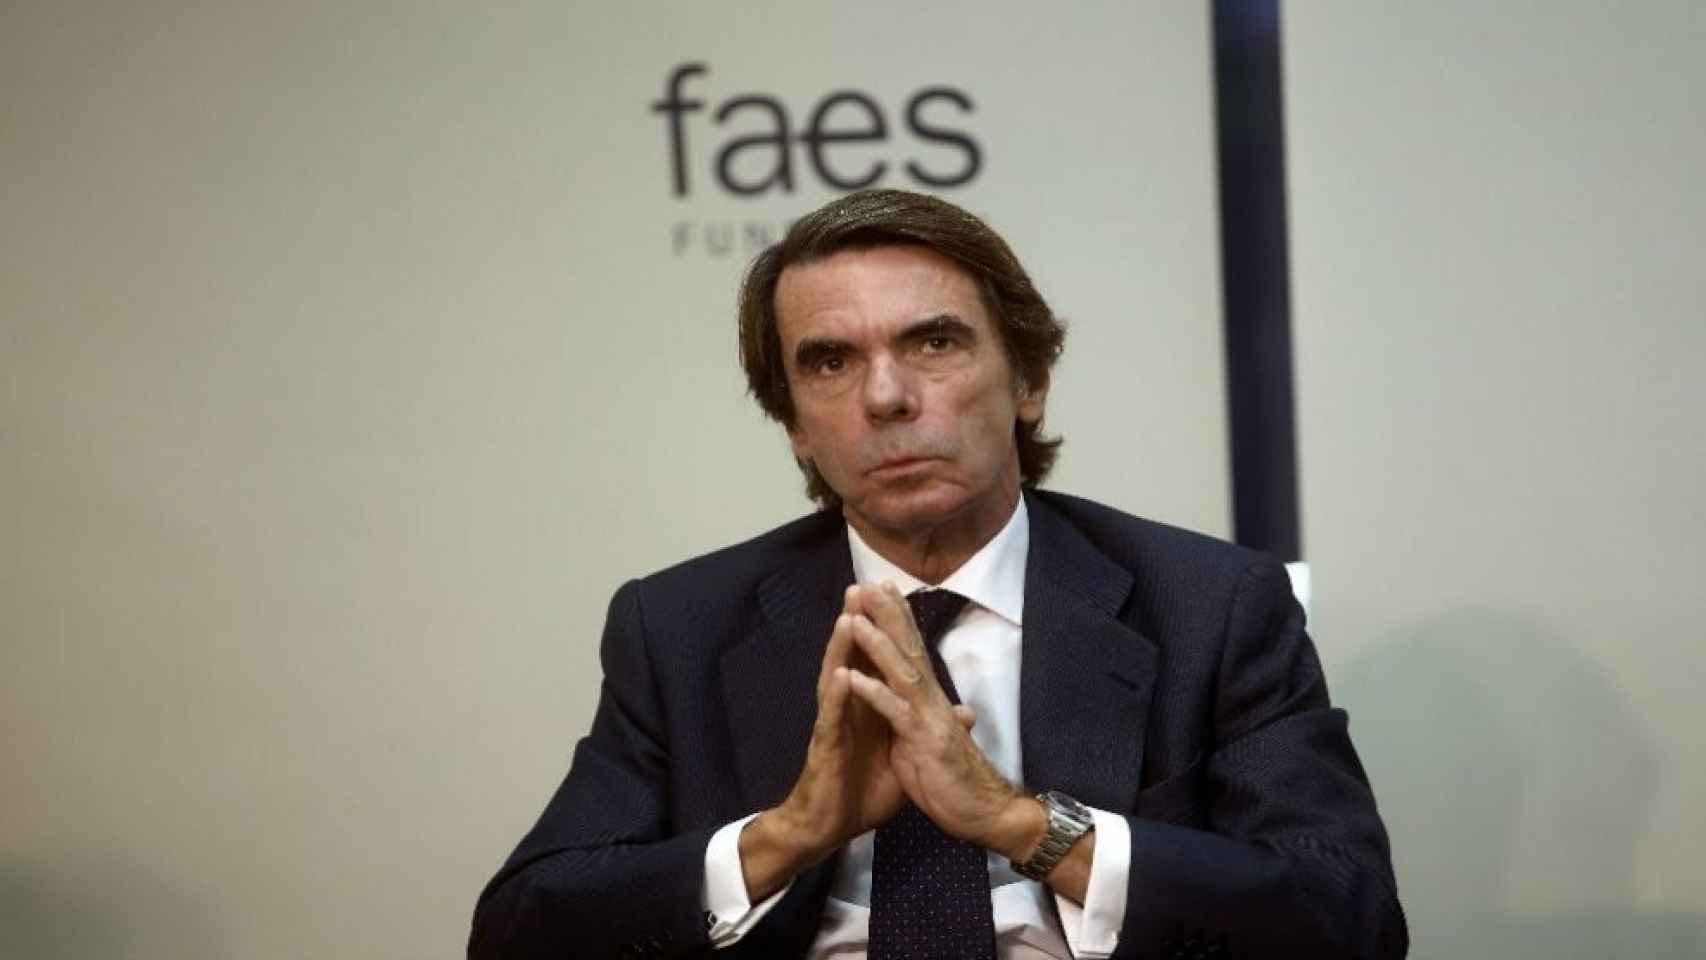 El presidente de Faes, José María Aznar, en una imagen de archivo.